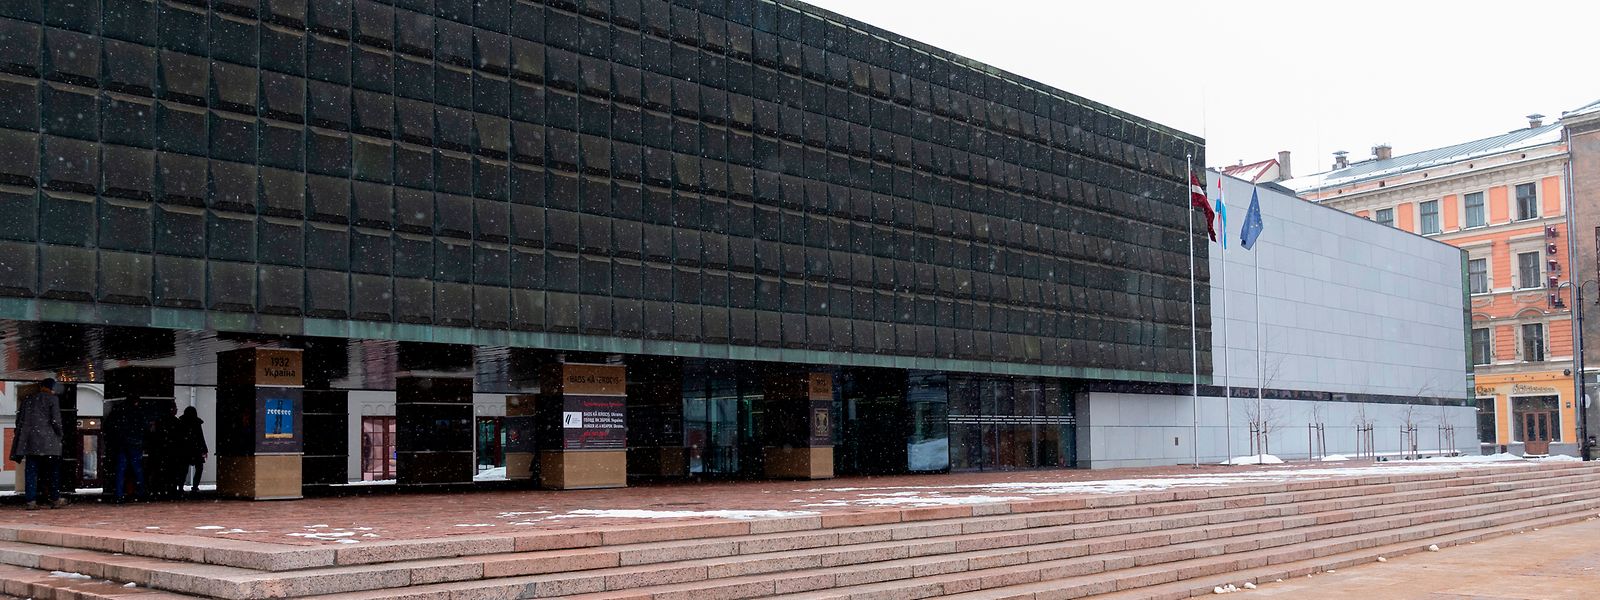 Das Okkupationsmuseum in Riga: Ein schwarzer Block, der an die dunkle Geschichte der Besetzung durch Nazi-Deutschland und die Sowjetunion erinnern soll. 